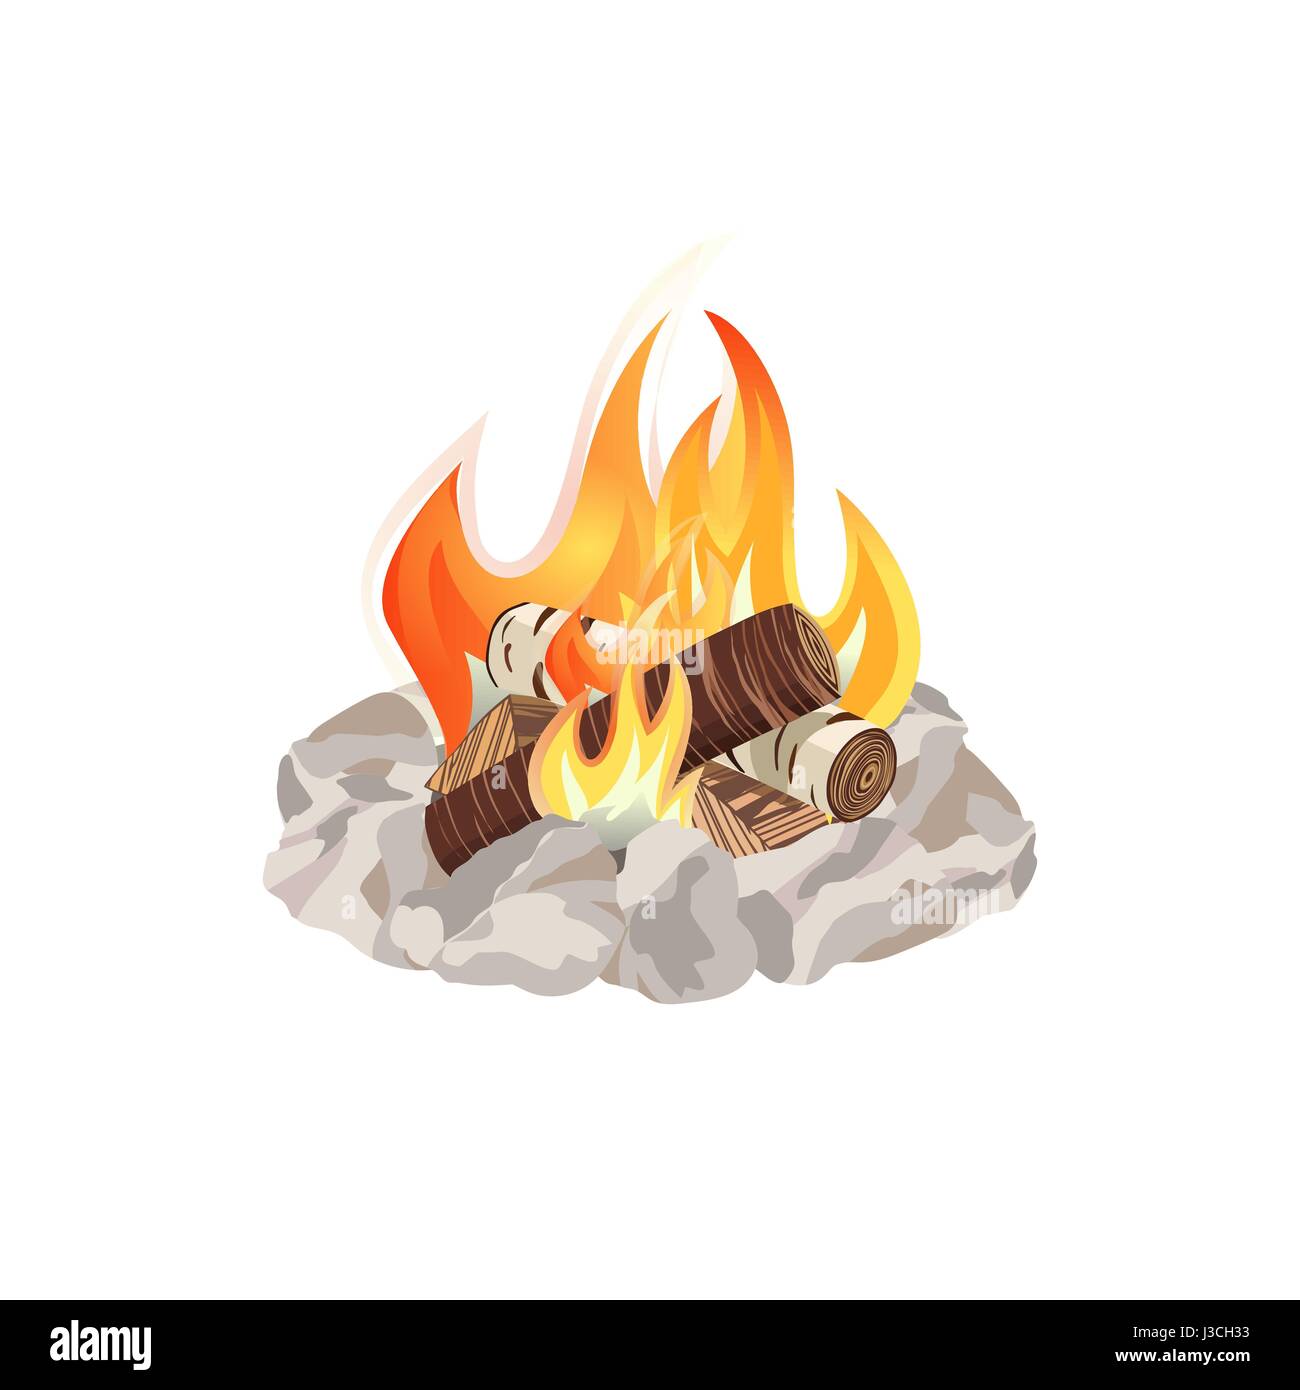 Campfire icon concept Stock Vector